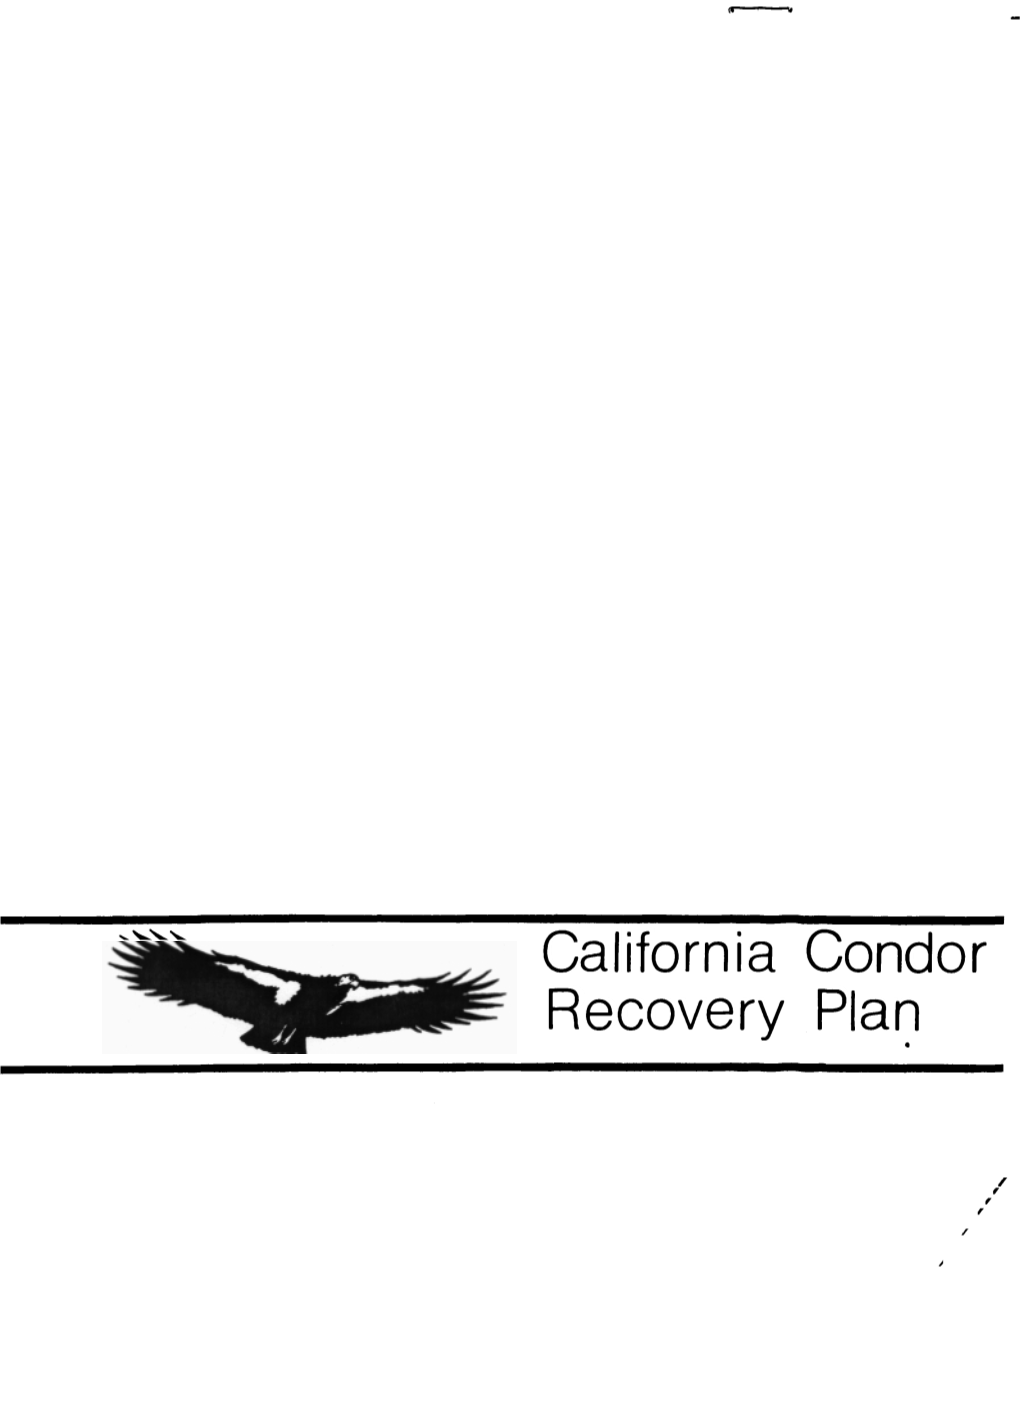 California Condor Recovery Plan CALIFORNIA CONDOR